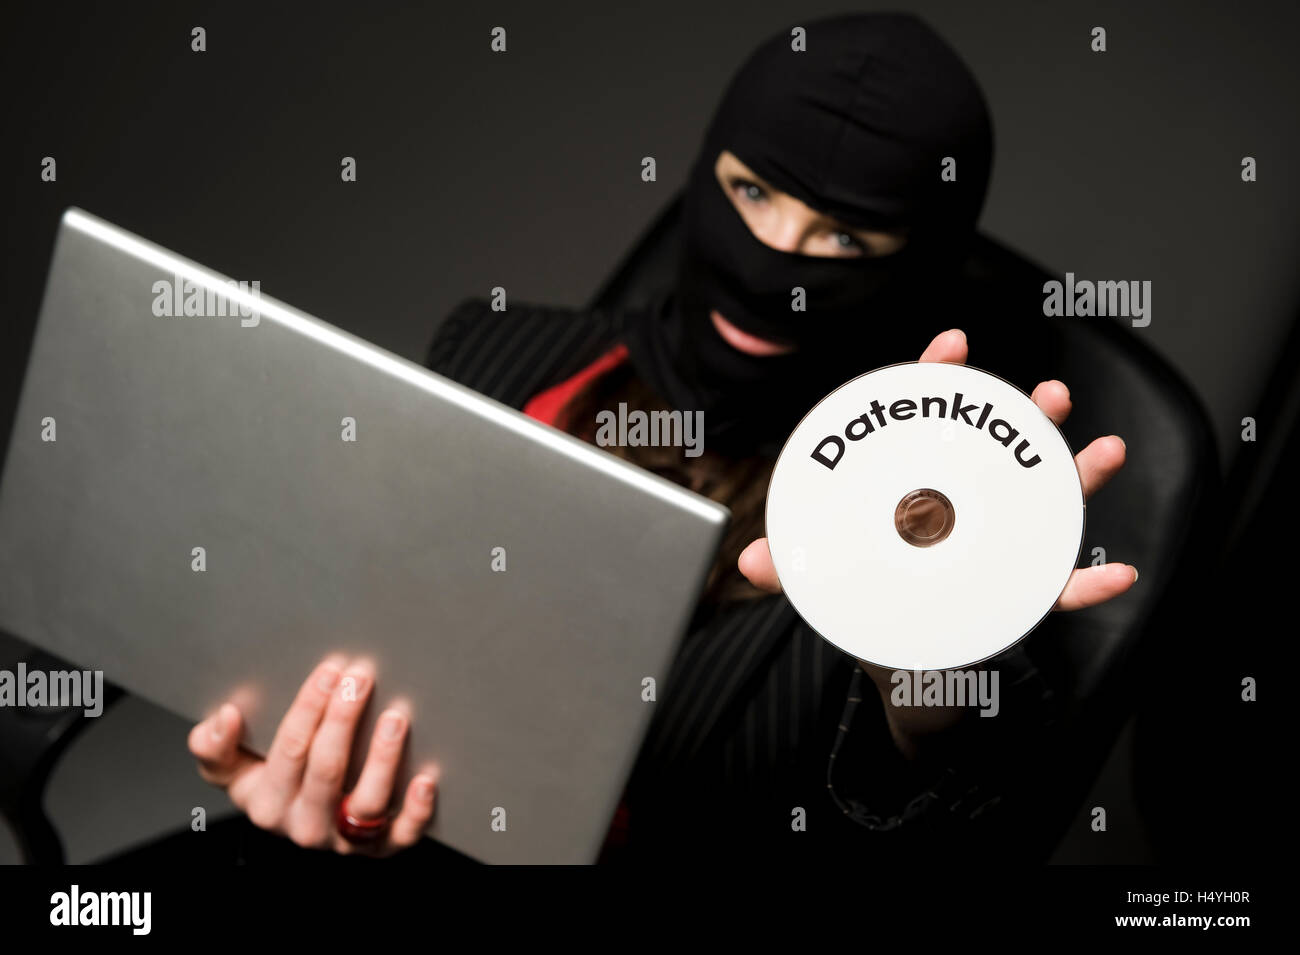 Cambrioleur masqué avec ordinateur portable et un CD avec "atenklau", le piratage de données Banque D'Images